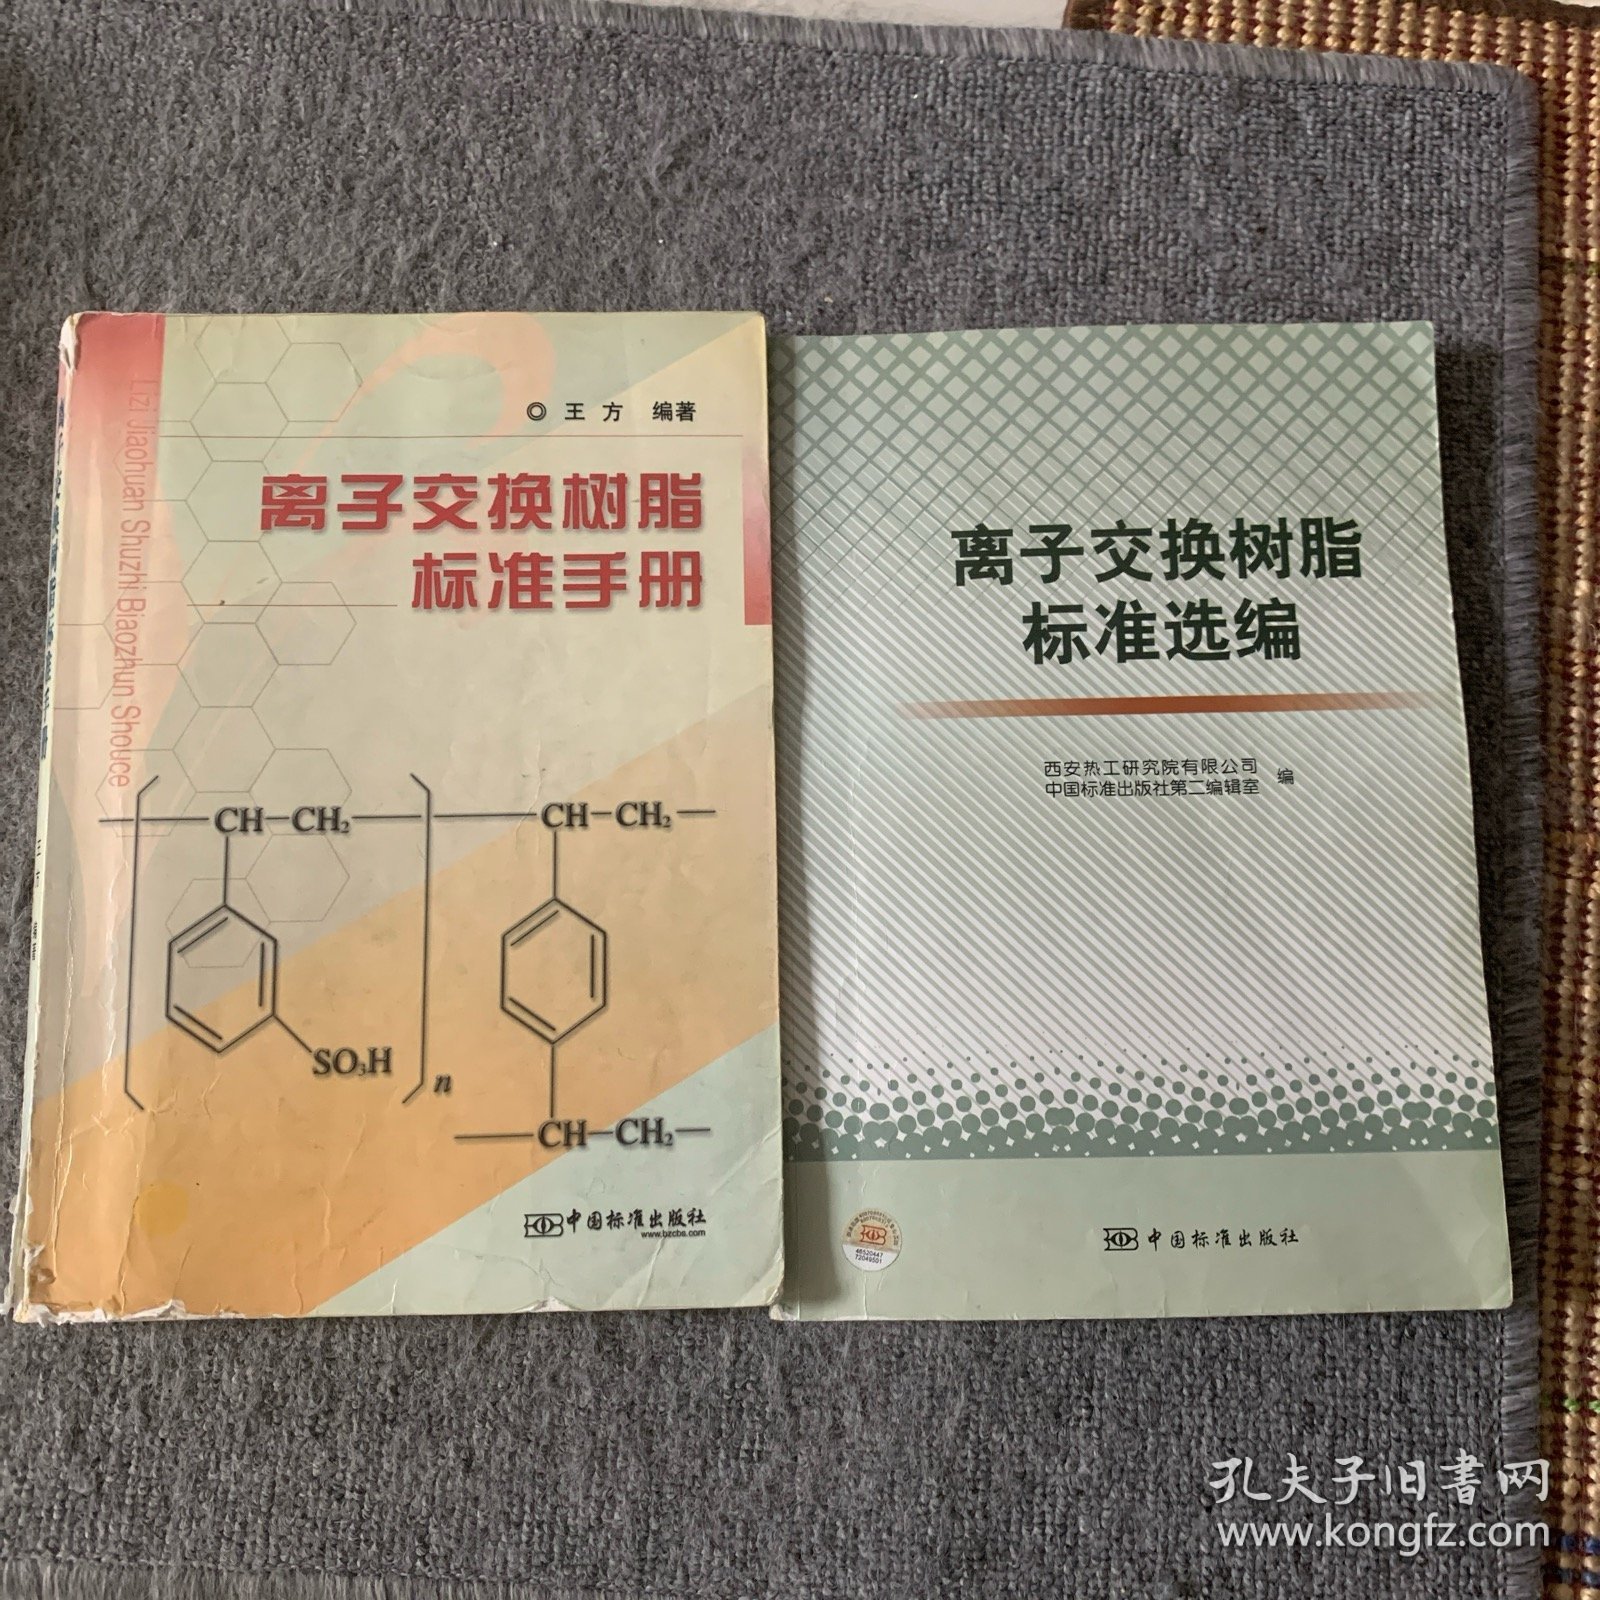 离子交换树脂标准选编+ 离子交换树脂标准手册